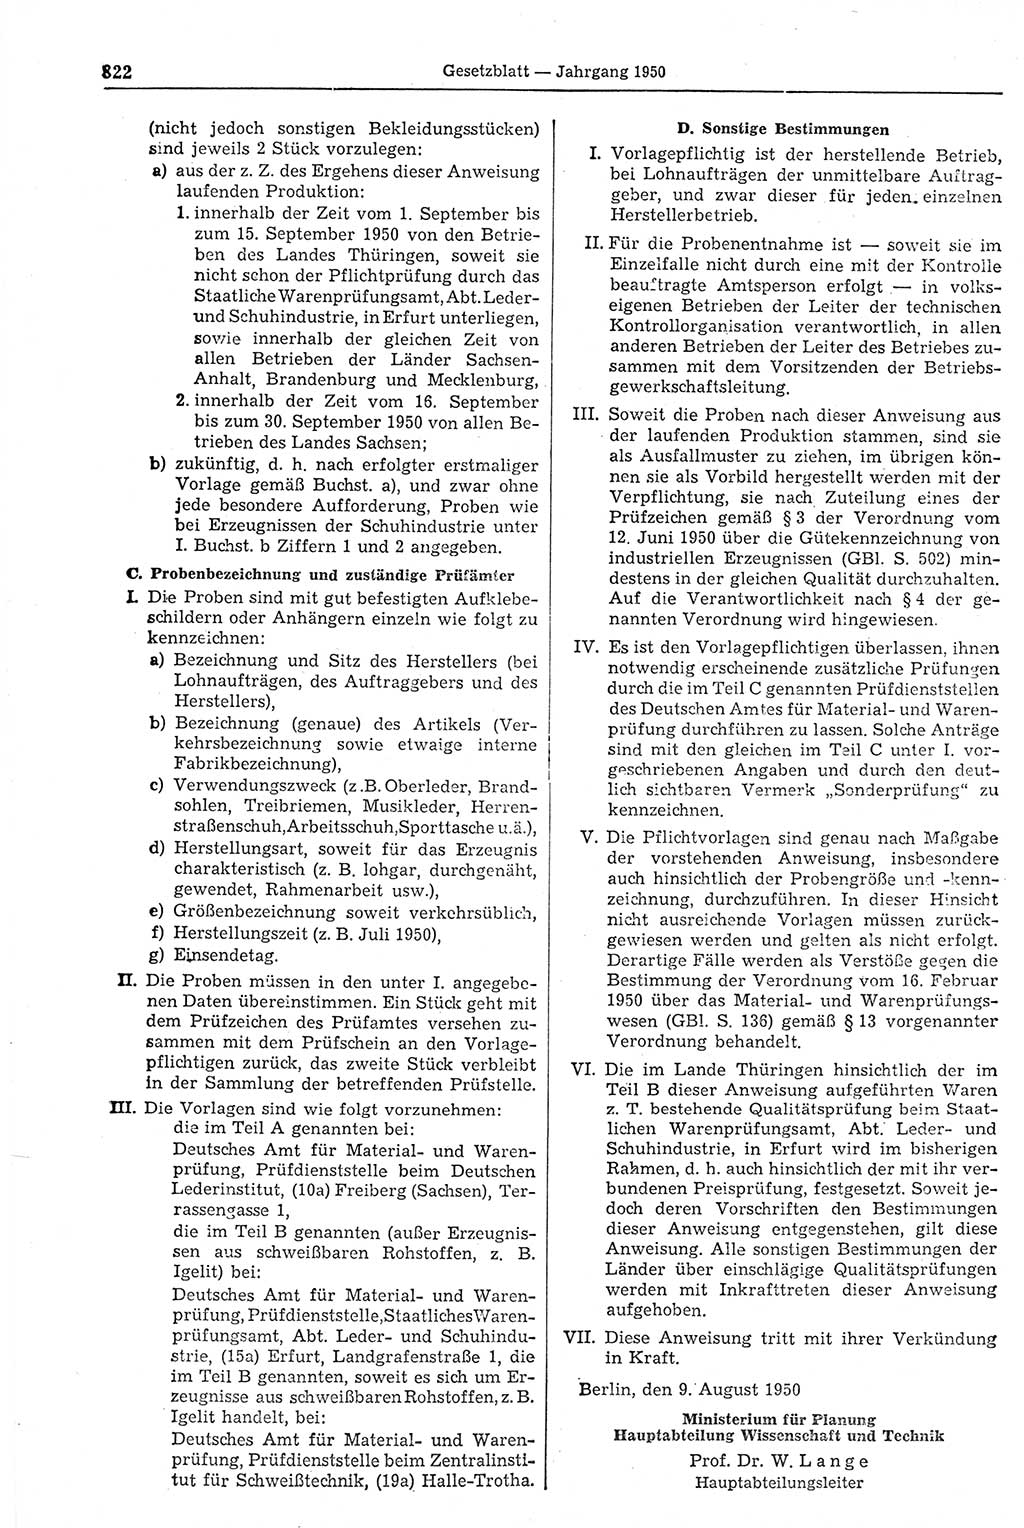 Gesetzblatt (GBl.) der Deutschen Demokratischen Republik (DDR) 1950, Seite 822 (GBl. DDR 1950, S. 822)